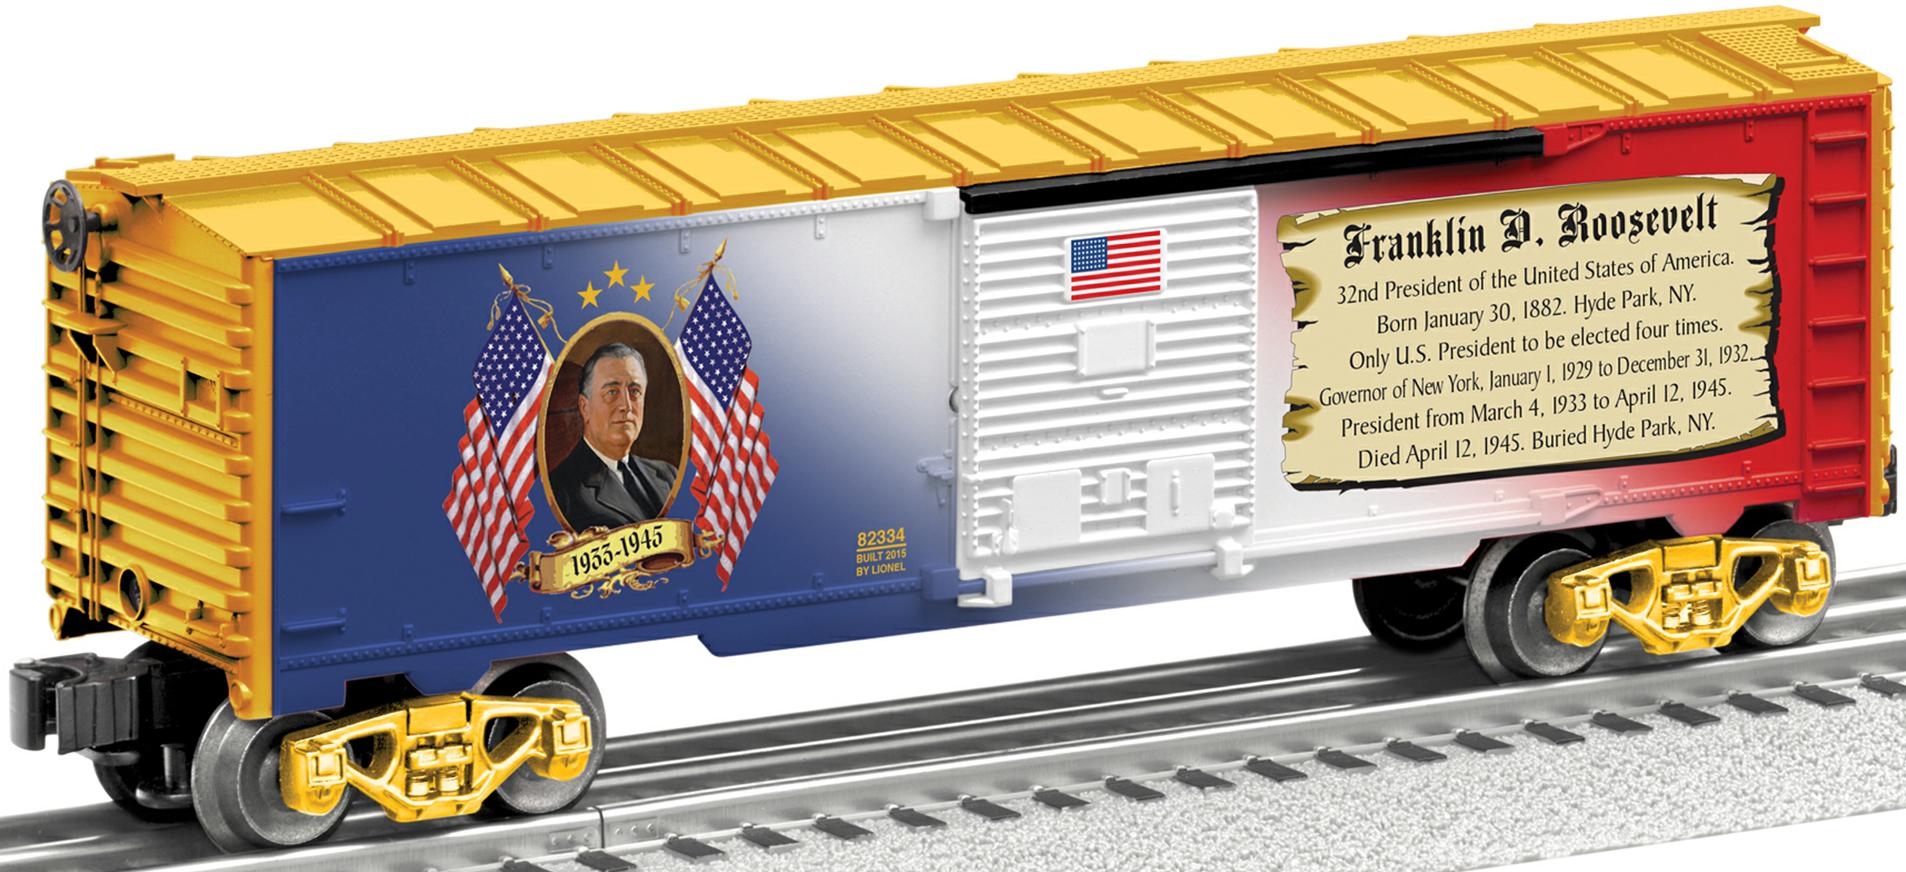 Franklin D. Roosevelt boxcar image